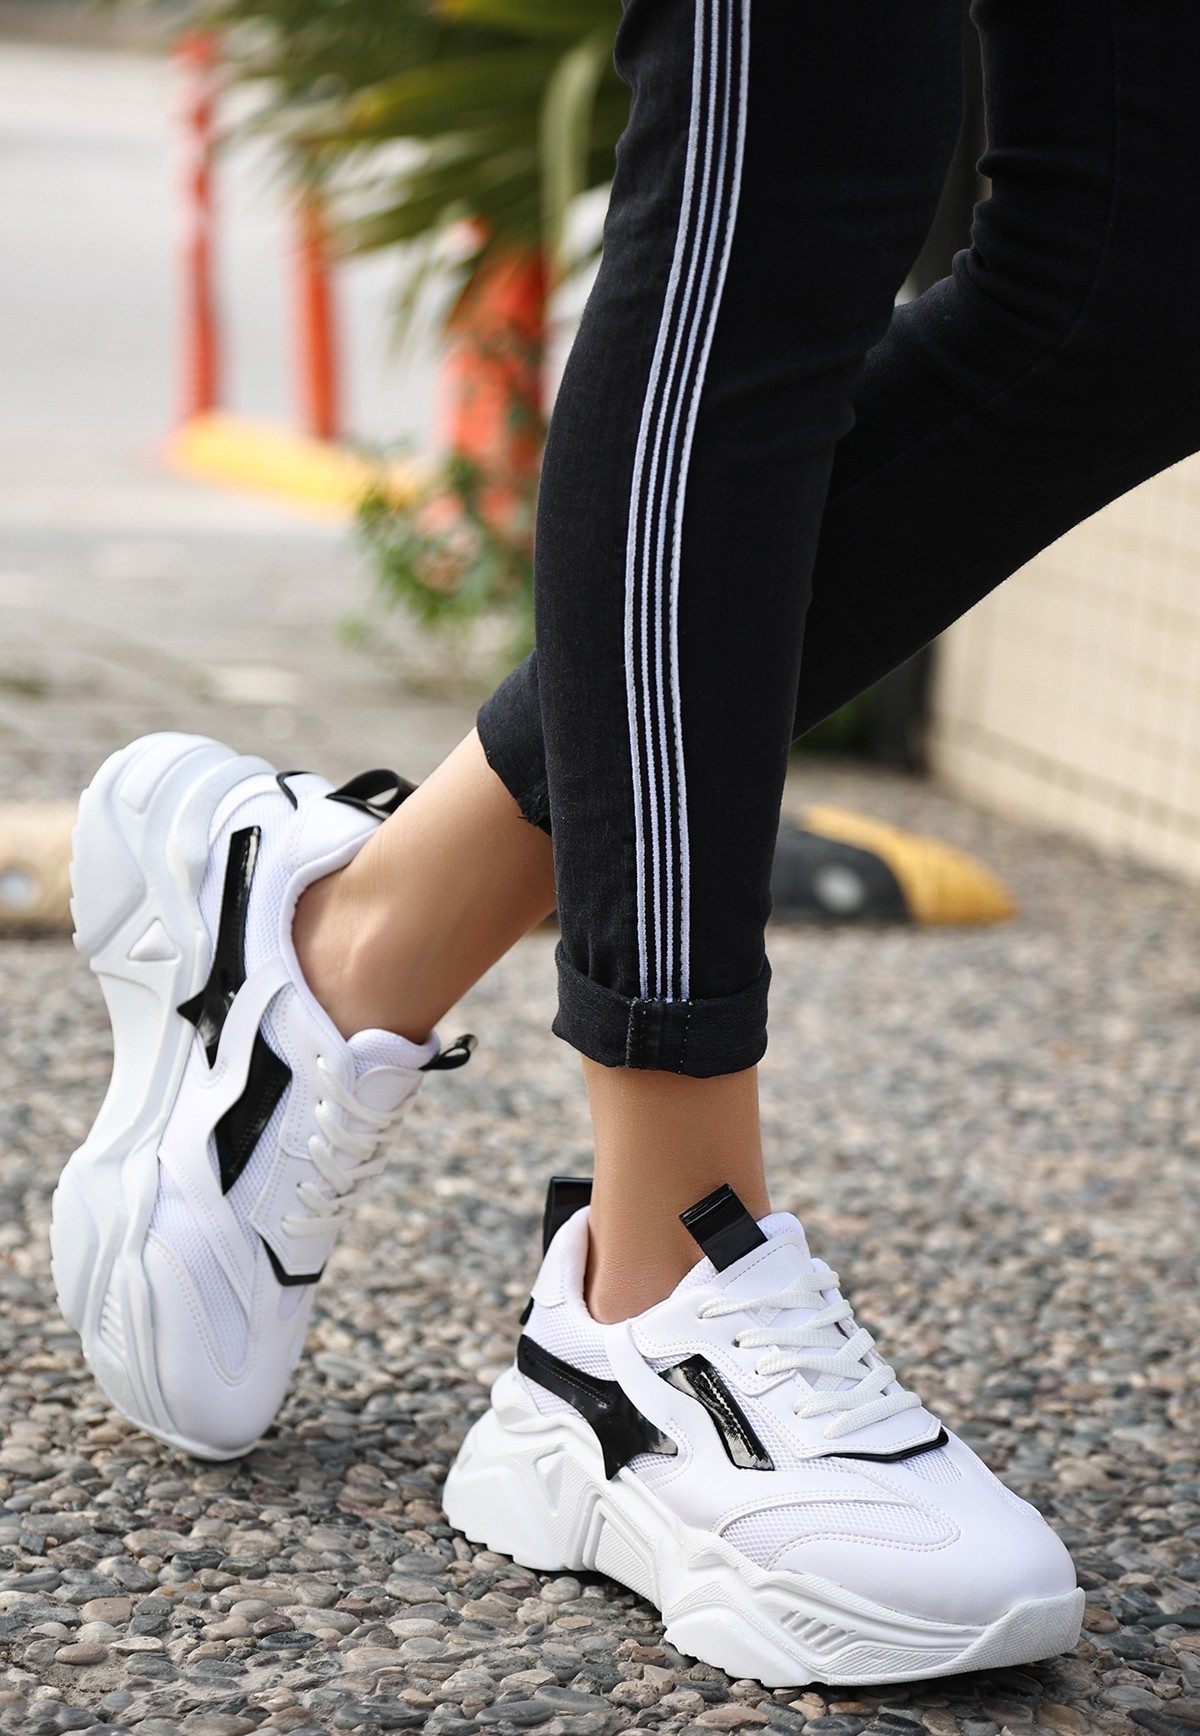 CLZ943 Beyaz Cilt Siyah Detaylı Bağcıklı Spor Ayakkabı